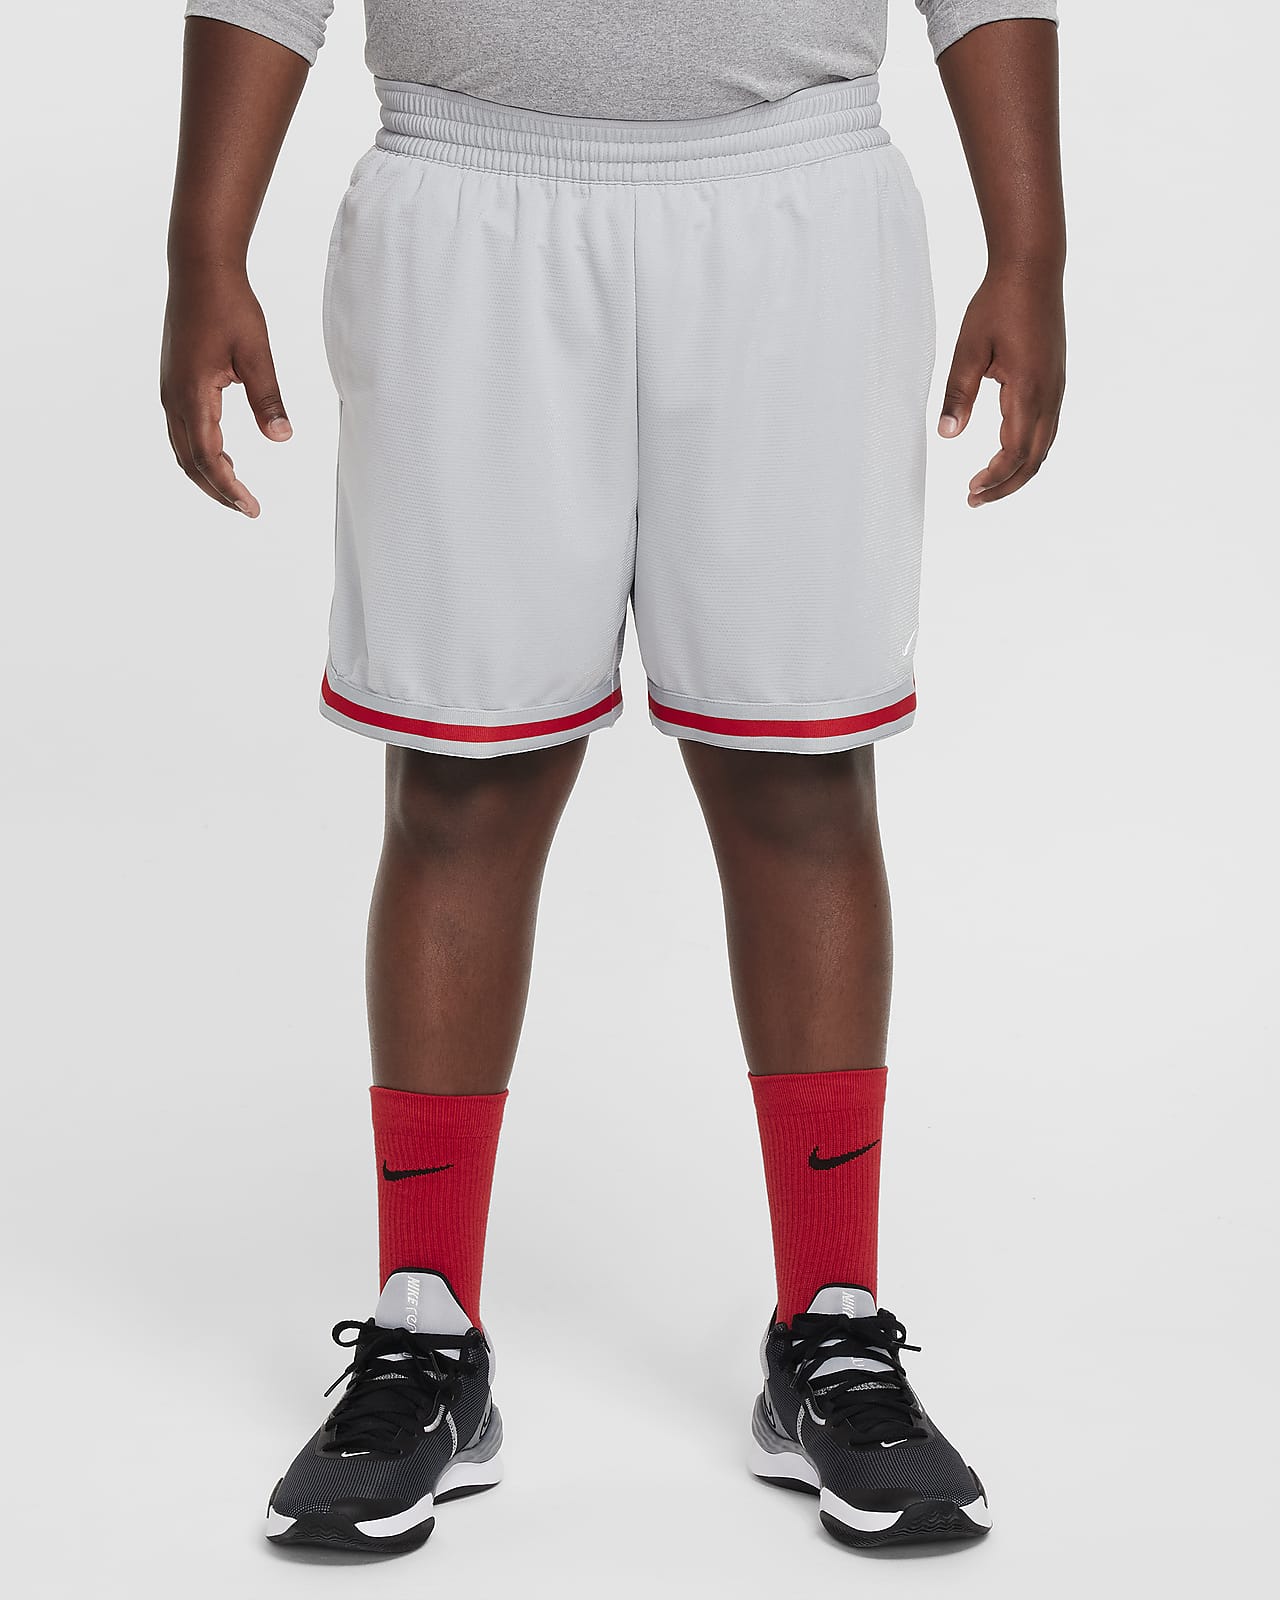 Shorts de básquetbol para niño talla grande (talla amplia) Nike DNA